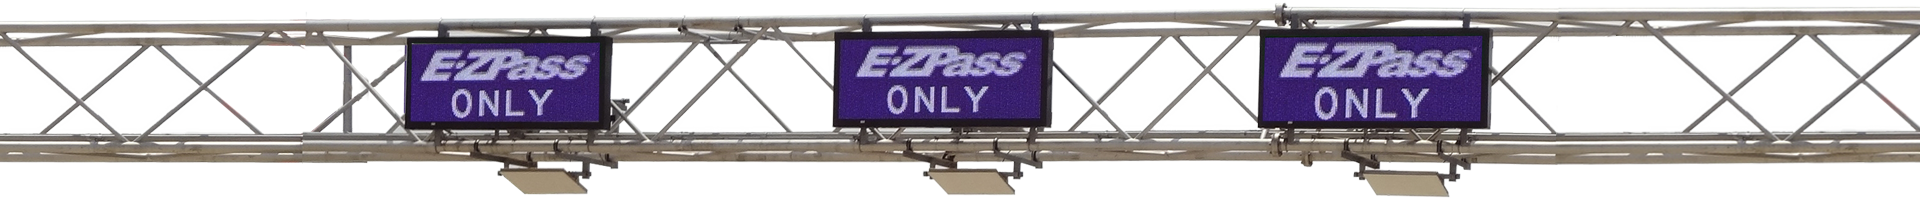 overhead-ezpass-sign